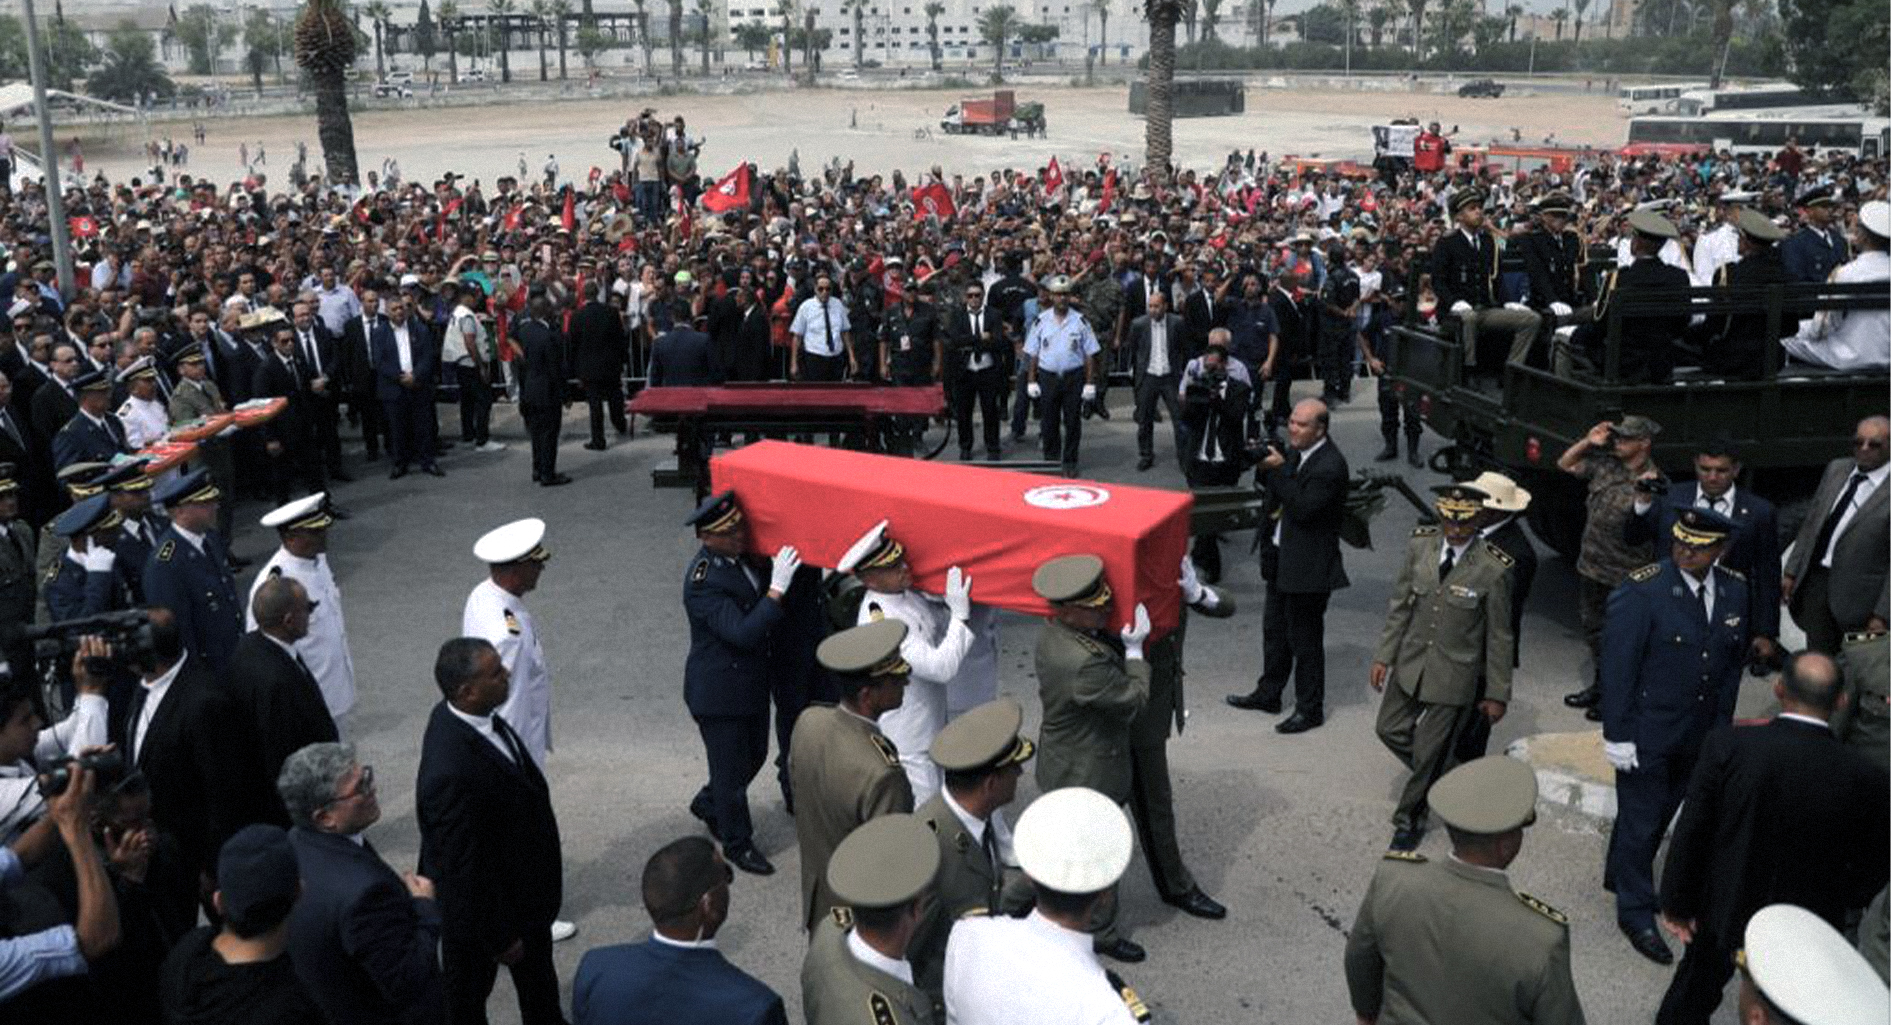 صورة القادة العرب يتغيبون عن جنازة السبسي كي لا يساور الشك شعوبهم بأنهم متفقون مع إصلاحاته